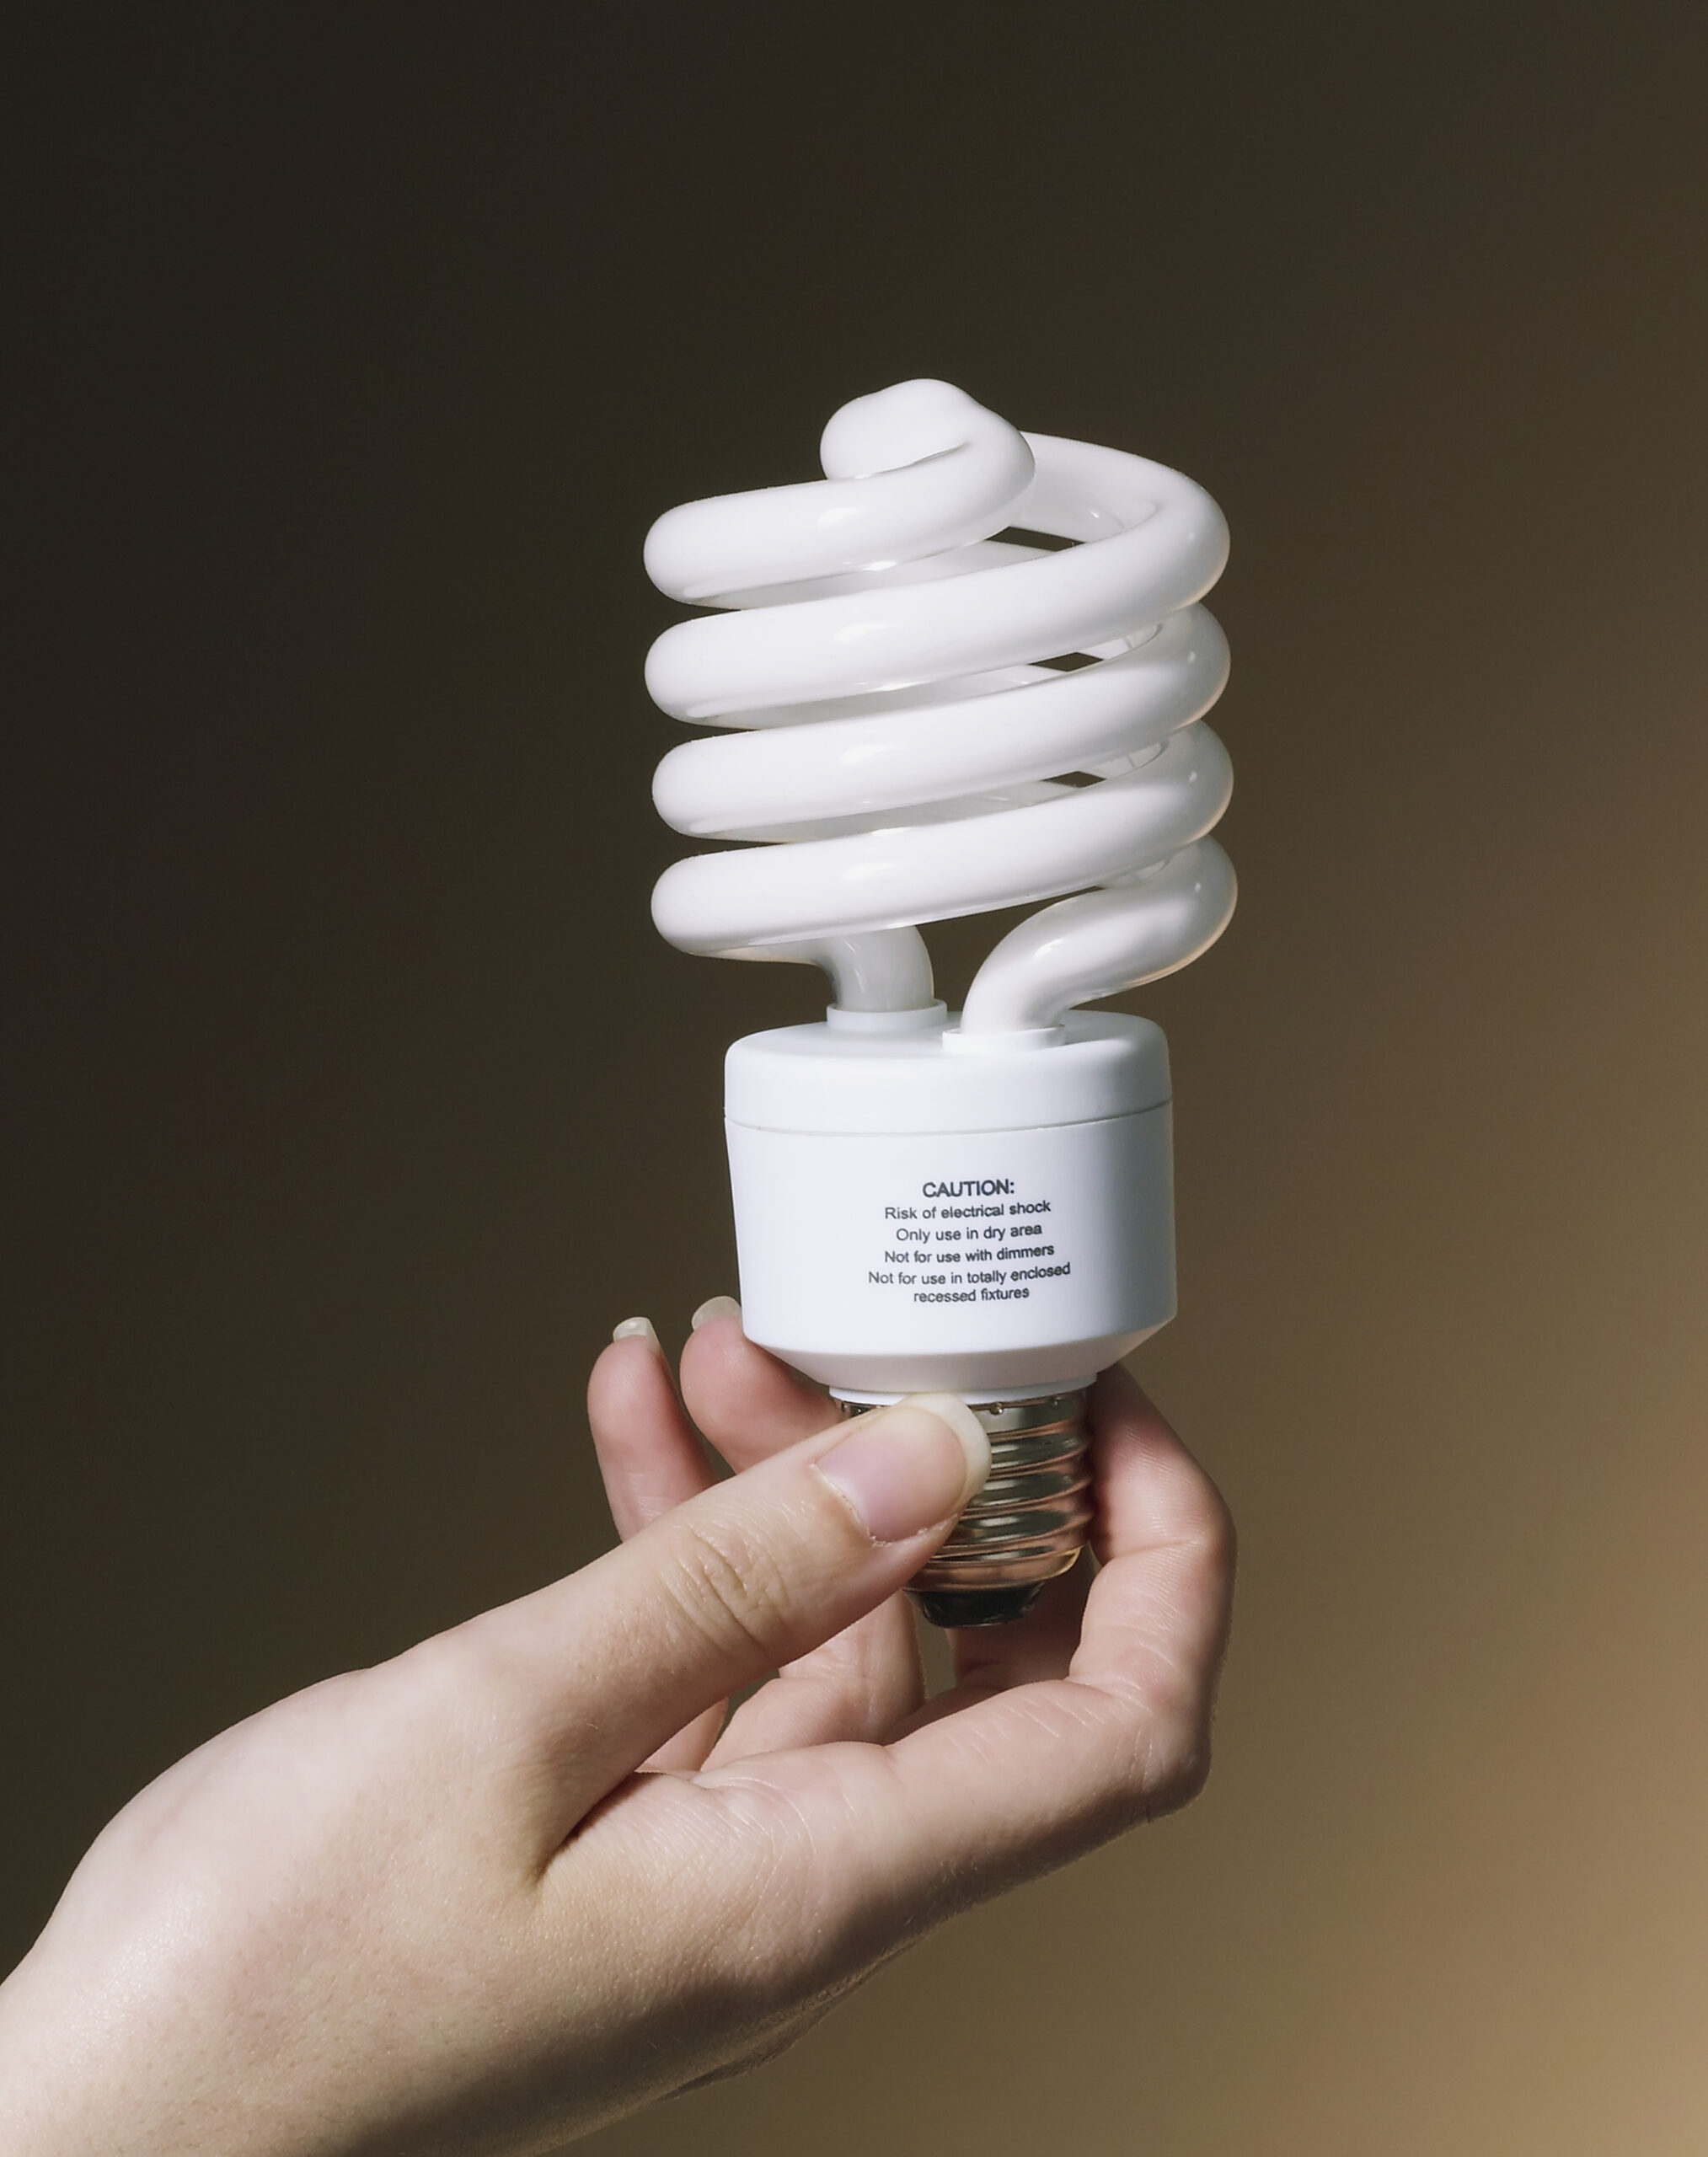 a hand holds up a fluorescent light bulb